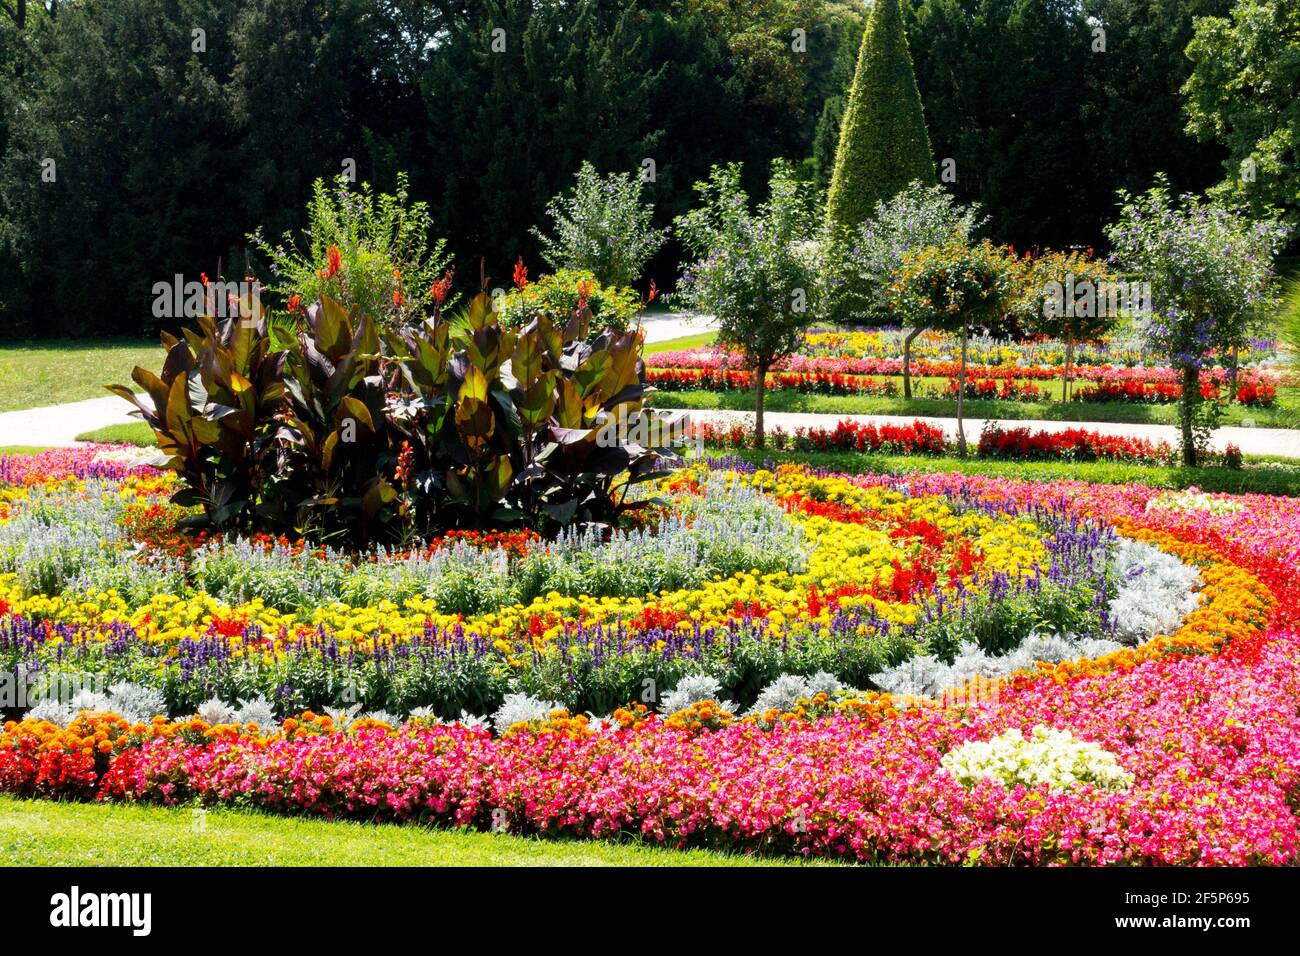 Blumenbeete in einem farbenfrohen Kreis angeordnet, Garten jährliche Pflanzen Blumenbeete Stockfoto